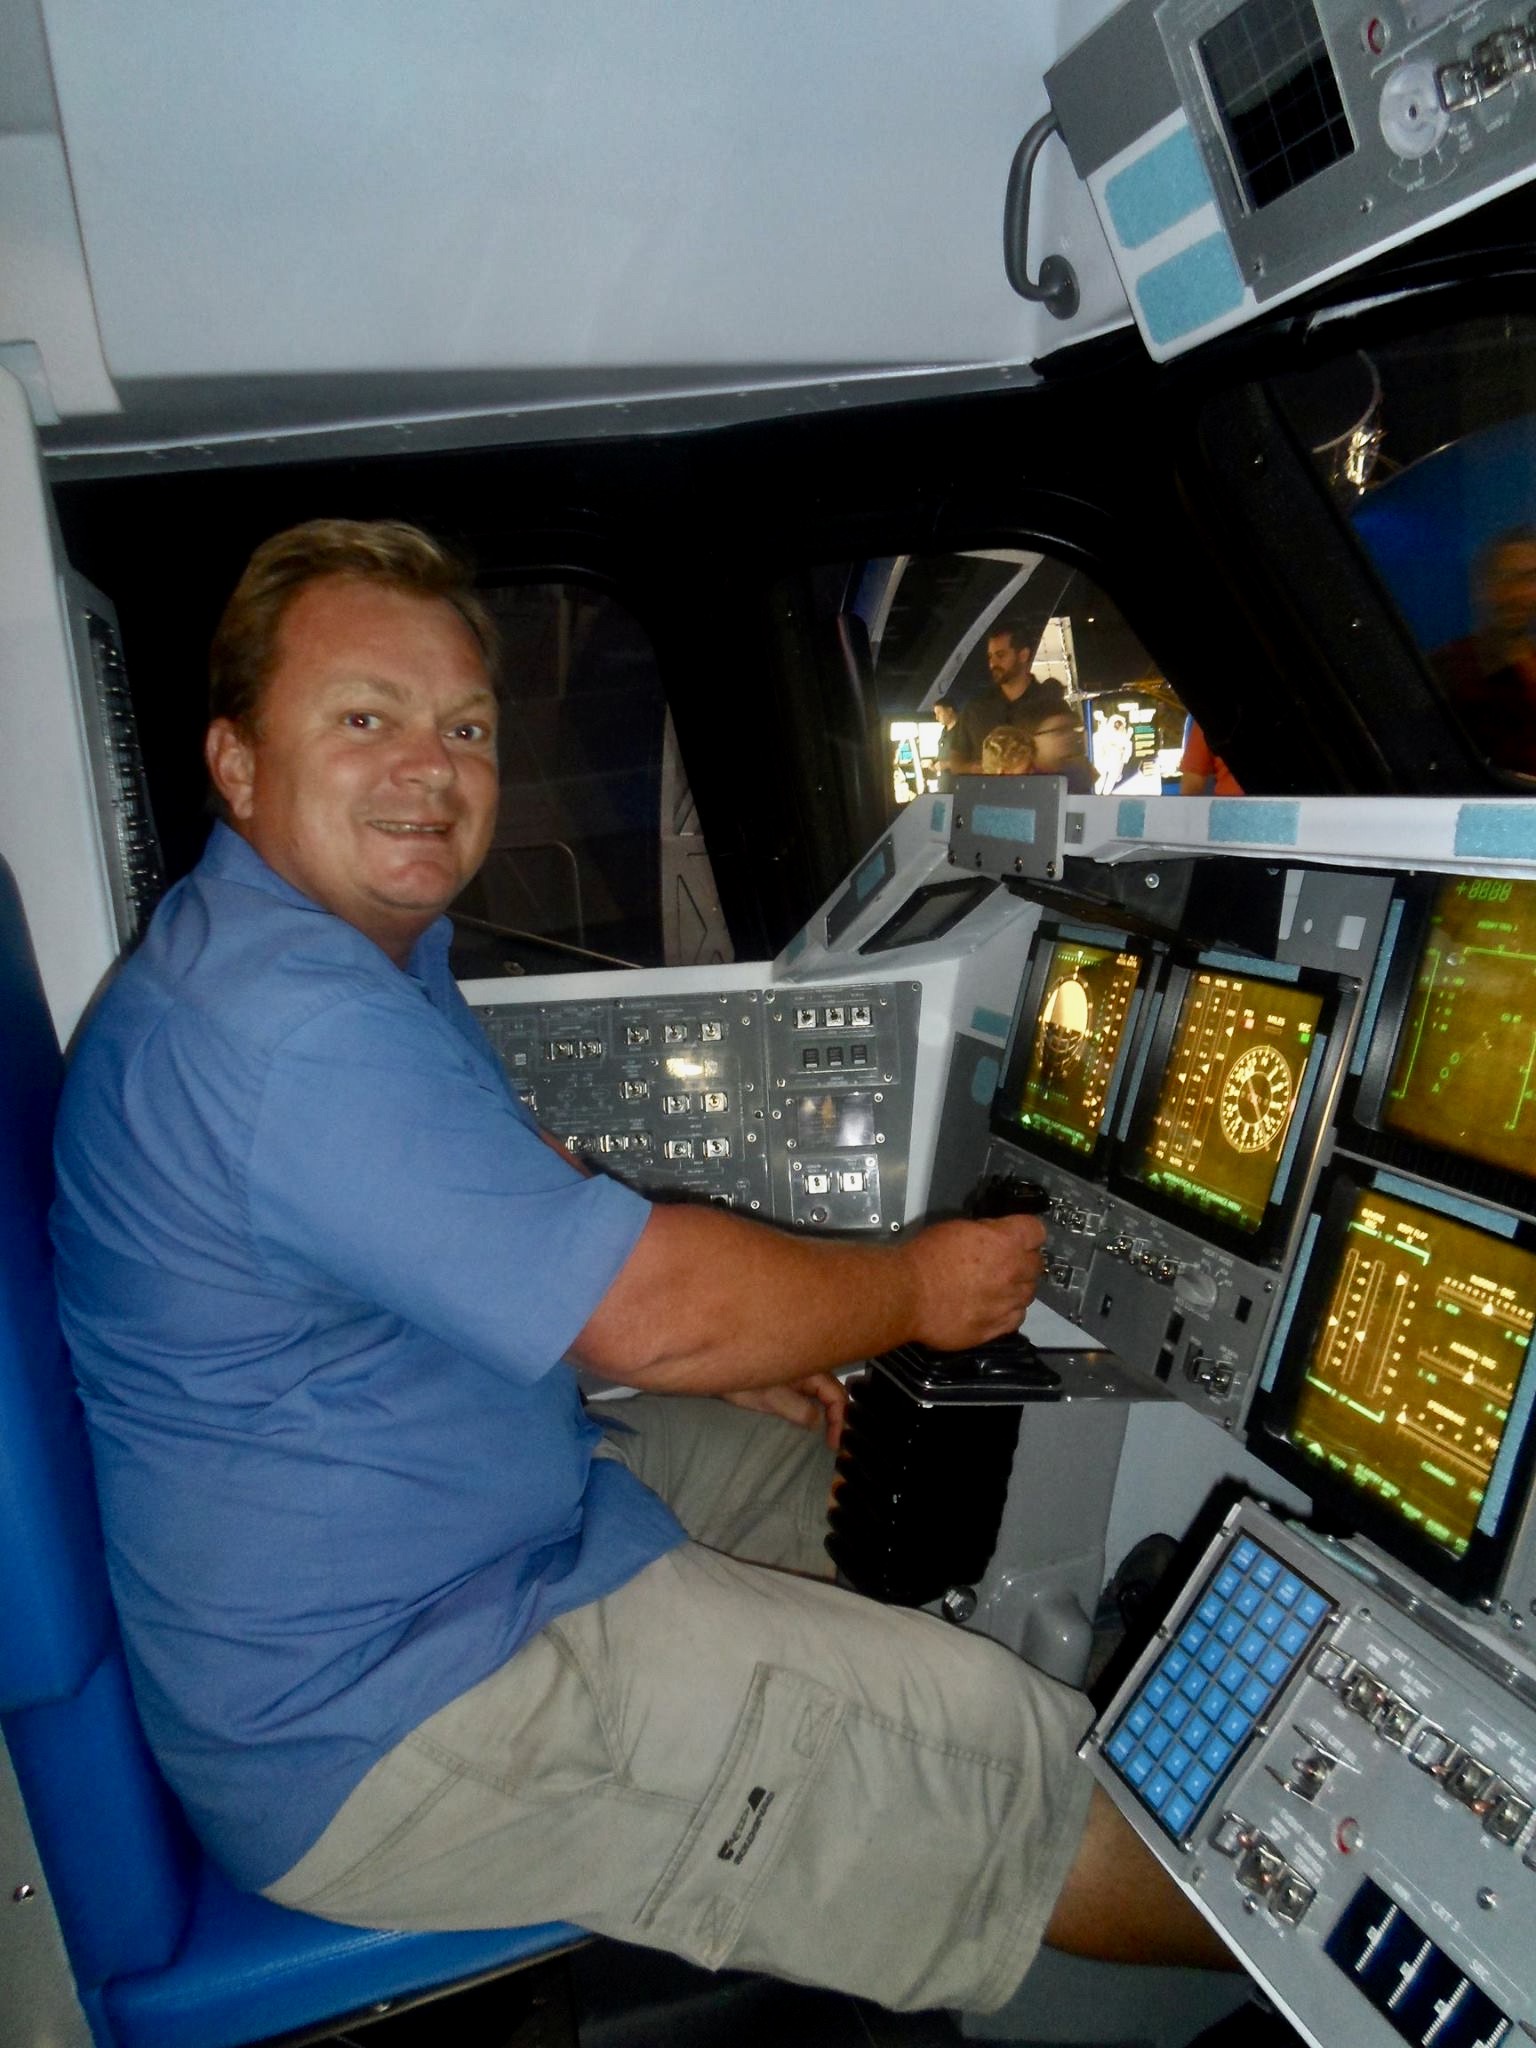 rumskib cockpit